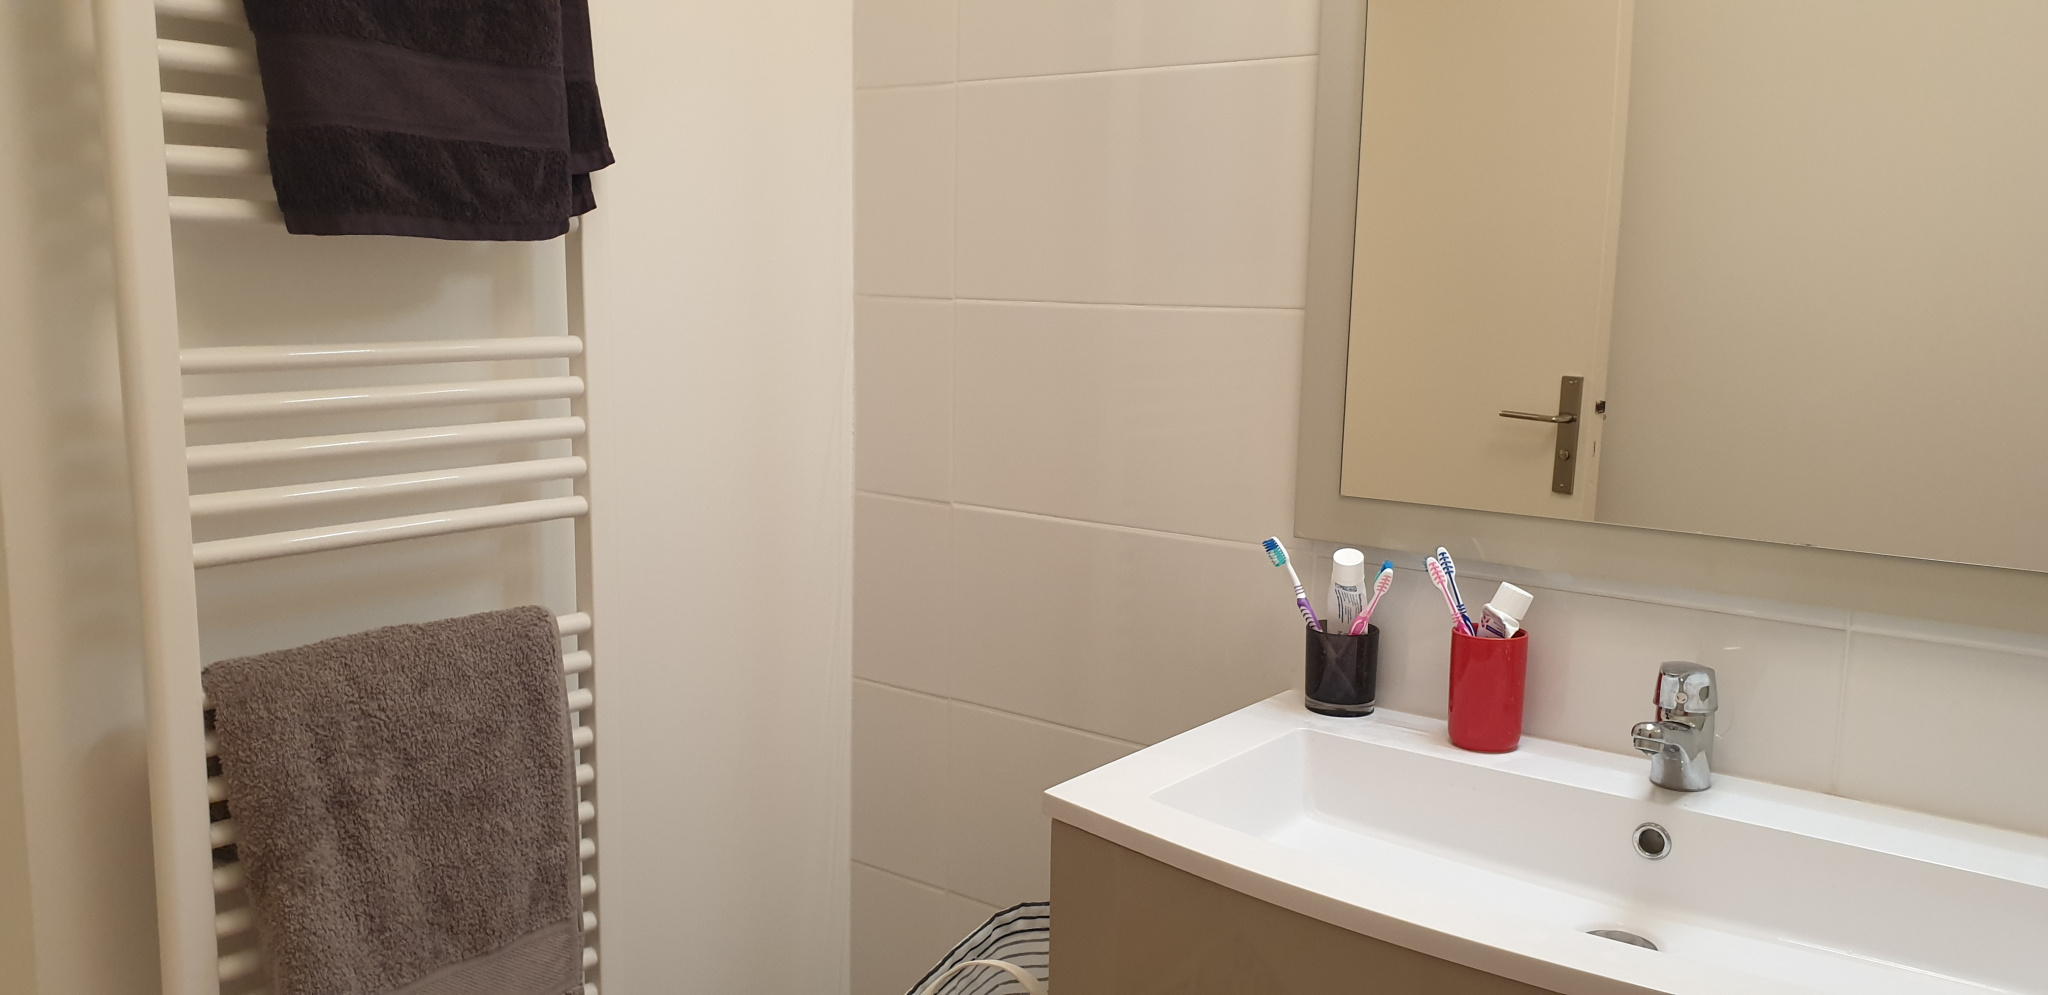 Salle de bain Location appartement Vacances Montpellier agence immobilière